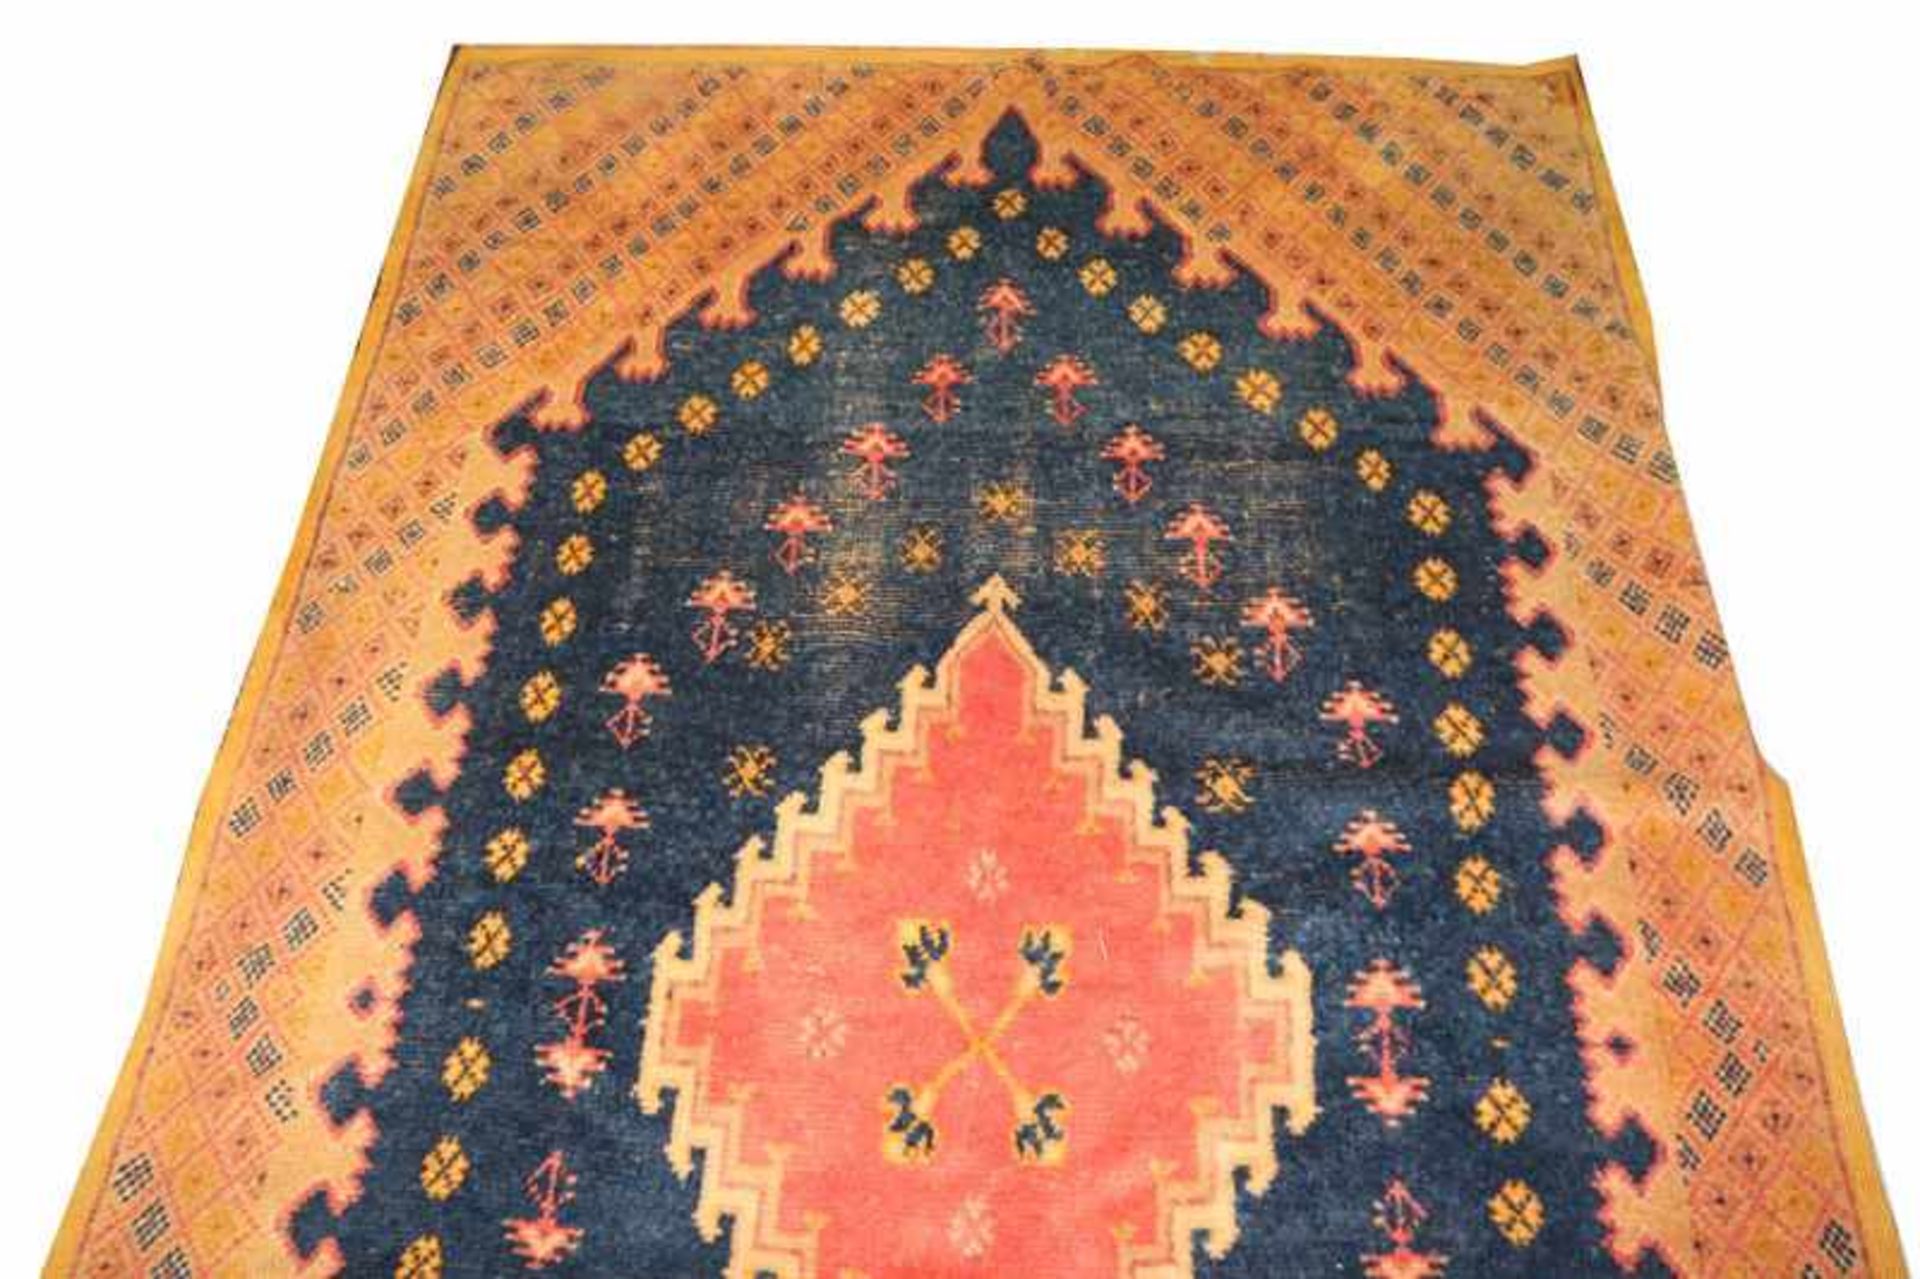 Teppich, blau/gelb/rot, stark beschädigt und gebraucht, 265 cm x 151 cm